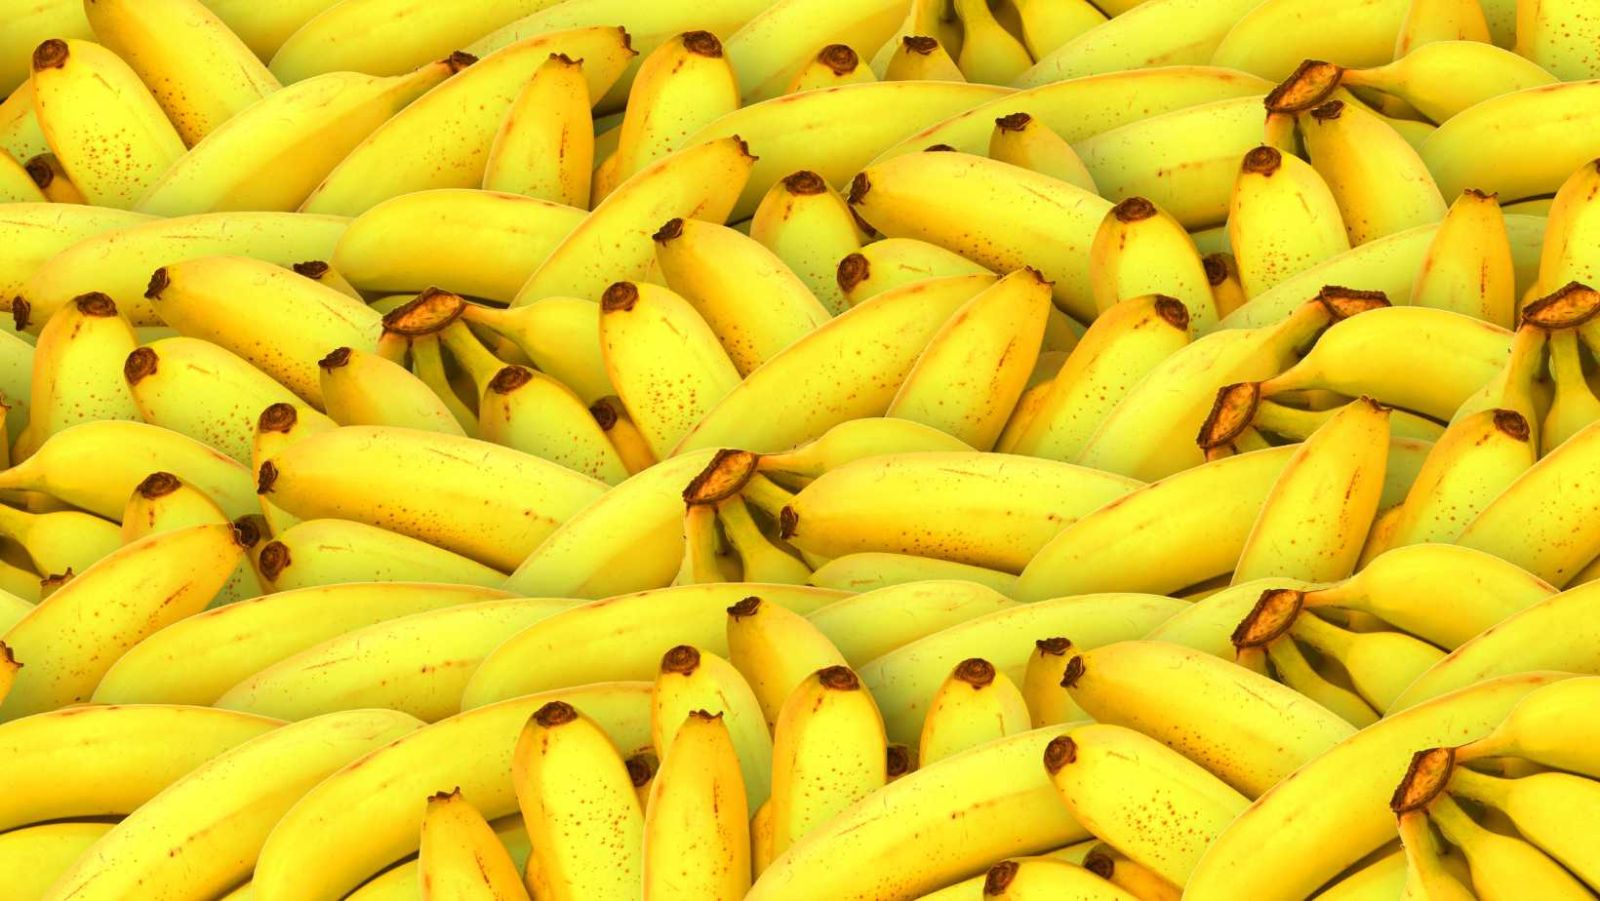 Manger trop de bananes : attention aux risques pour la santé !